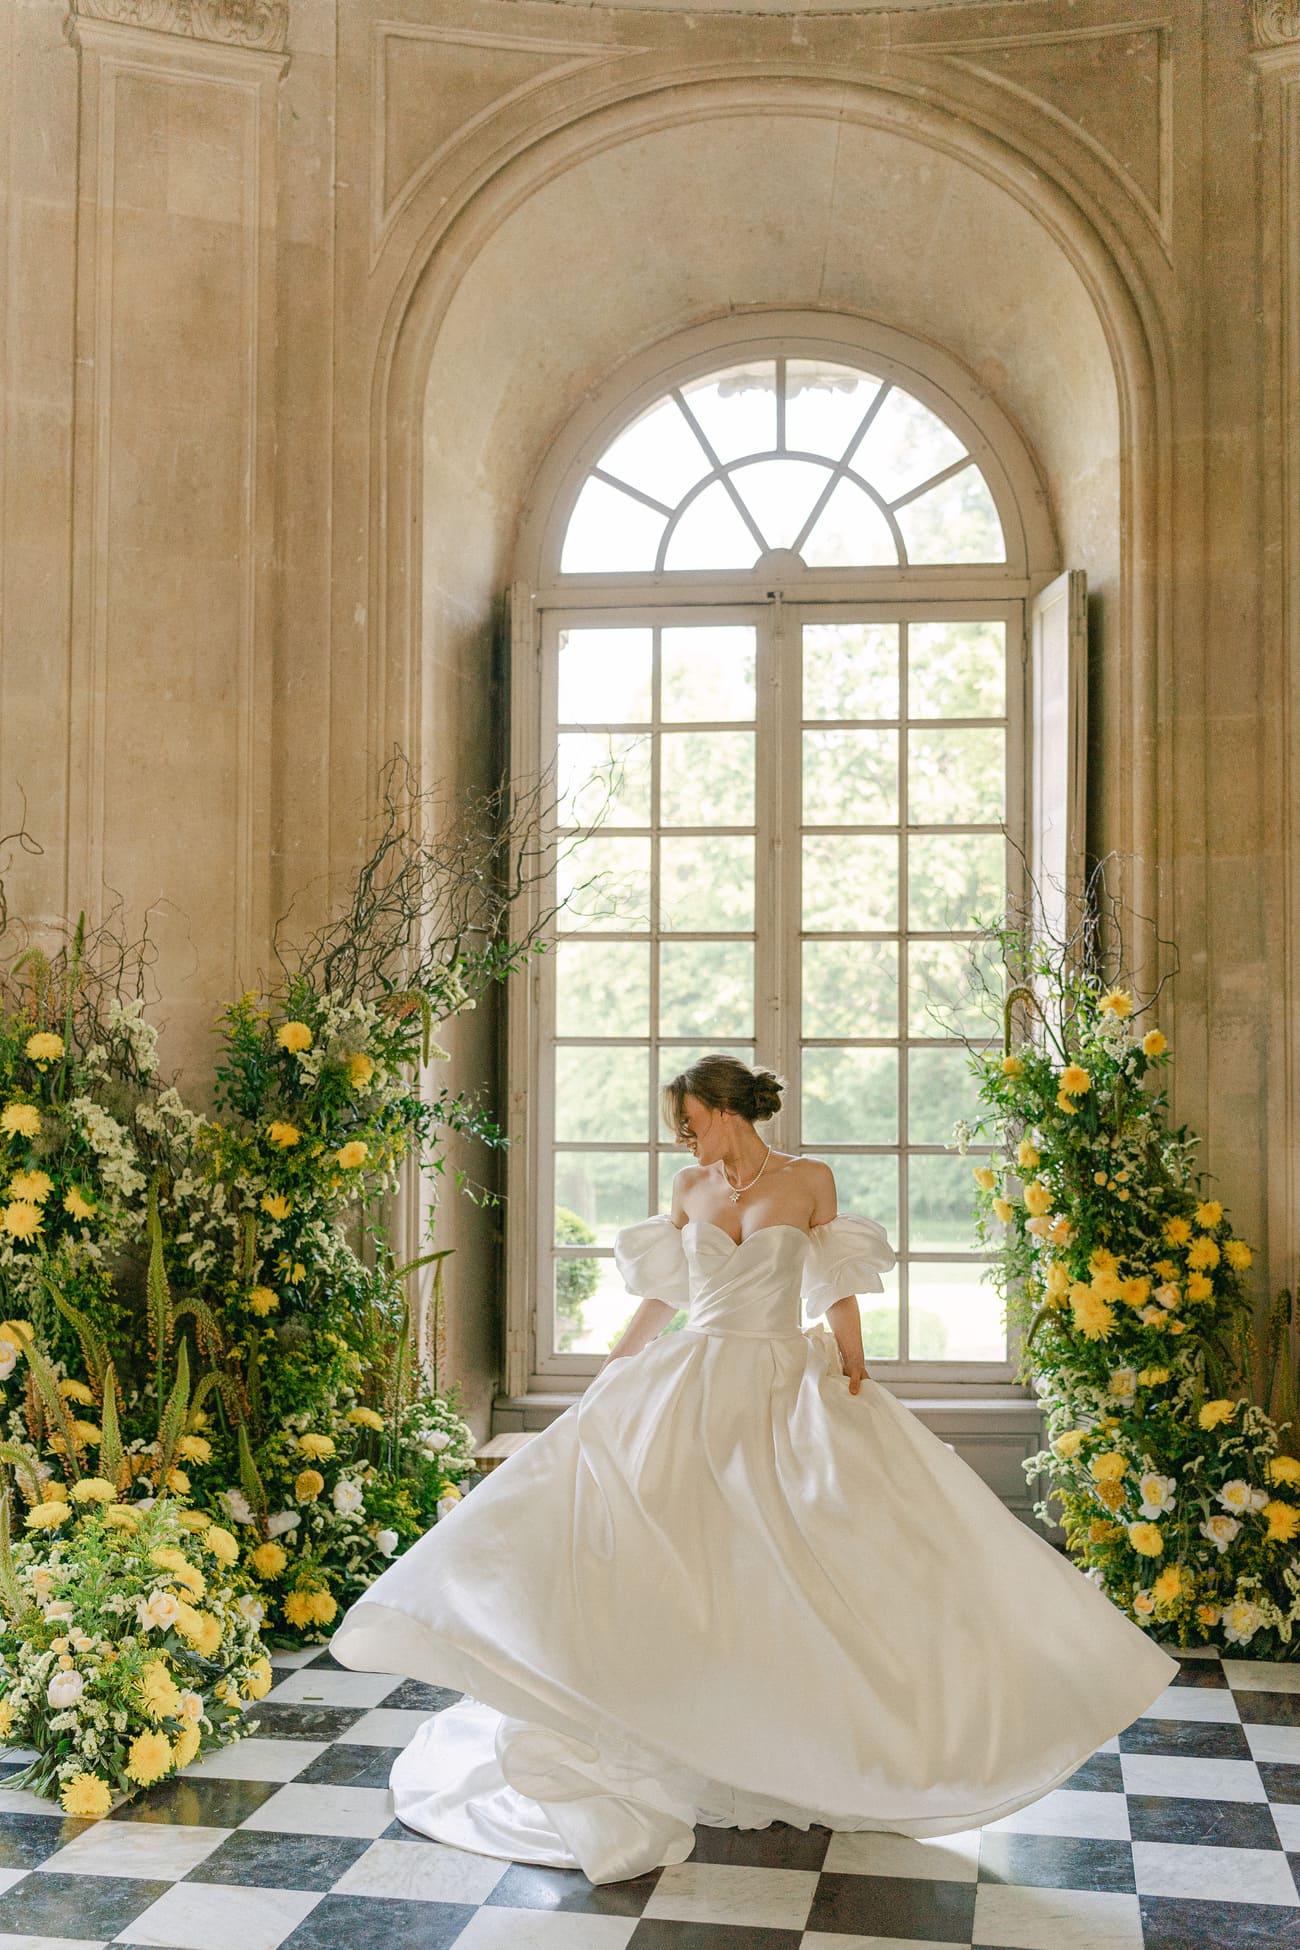 Braut in einem eleganten weißen Kleid tanzt in einem historischen Schlosssaal mit schwarz-weiß kariertem Boden, umgeben von üppigen gelben Blumenarrangements und einem großen Fenster im Hintergrund.